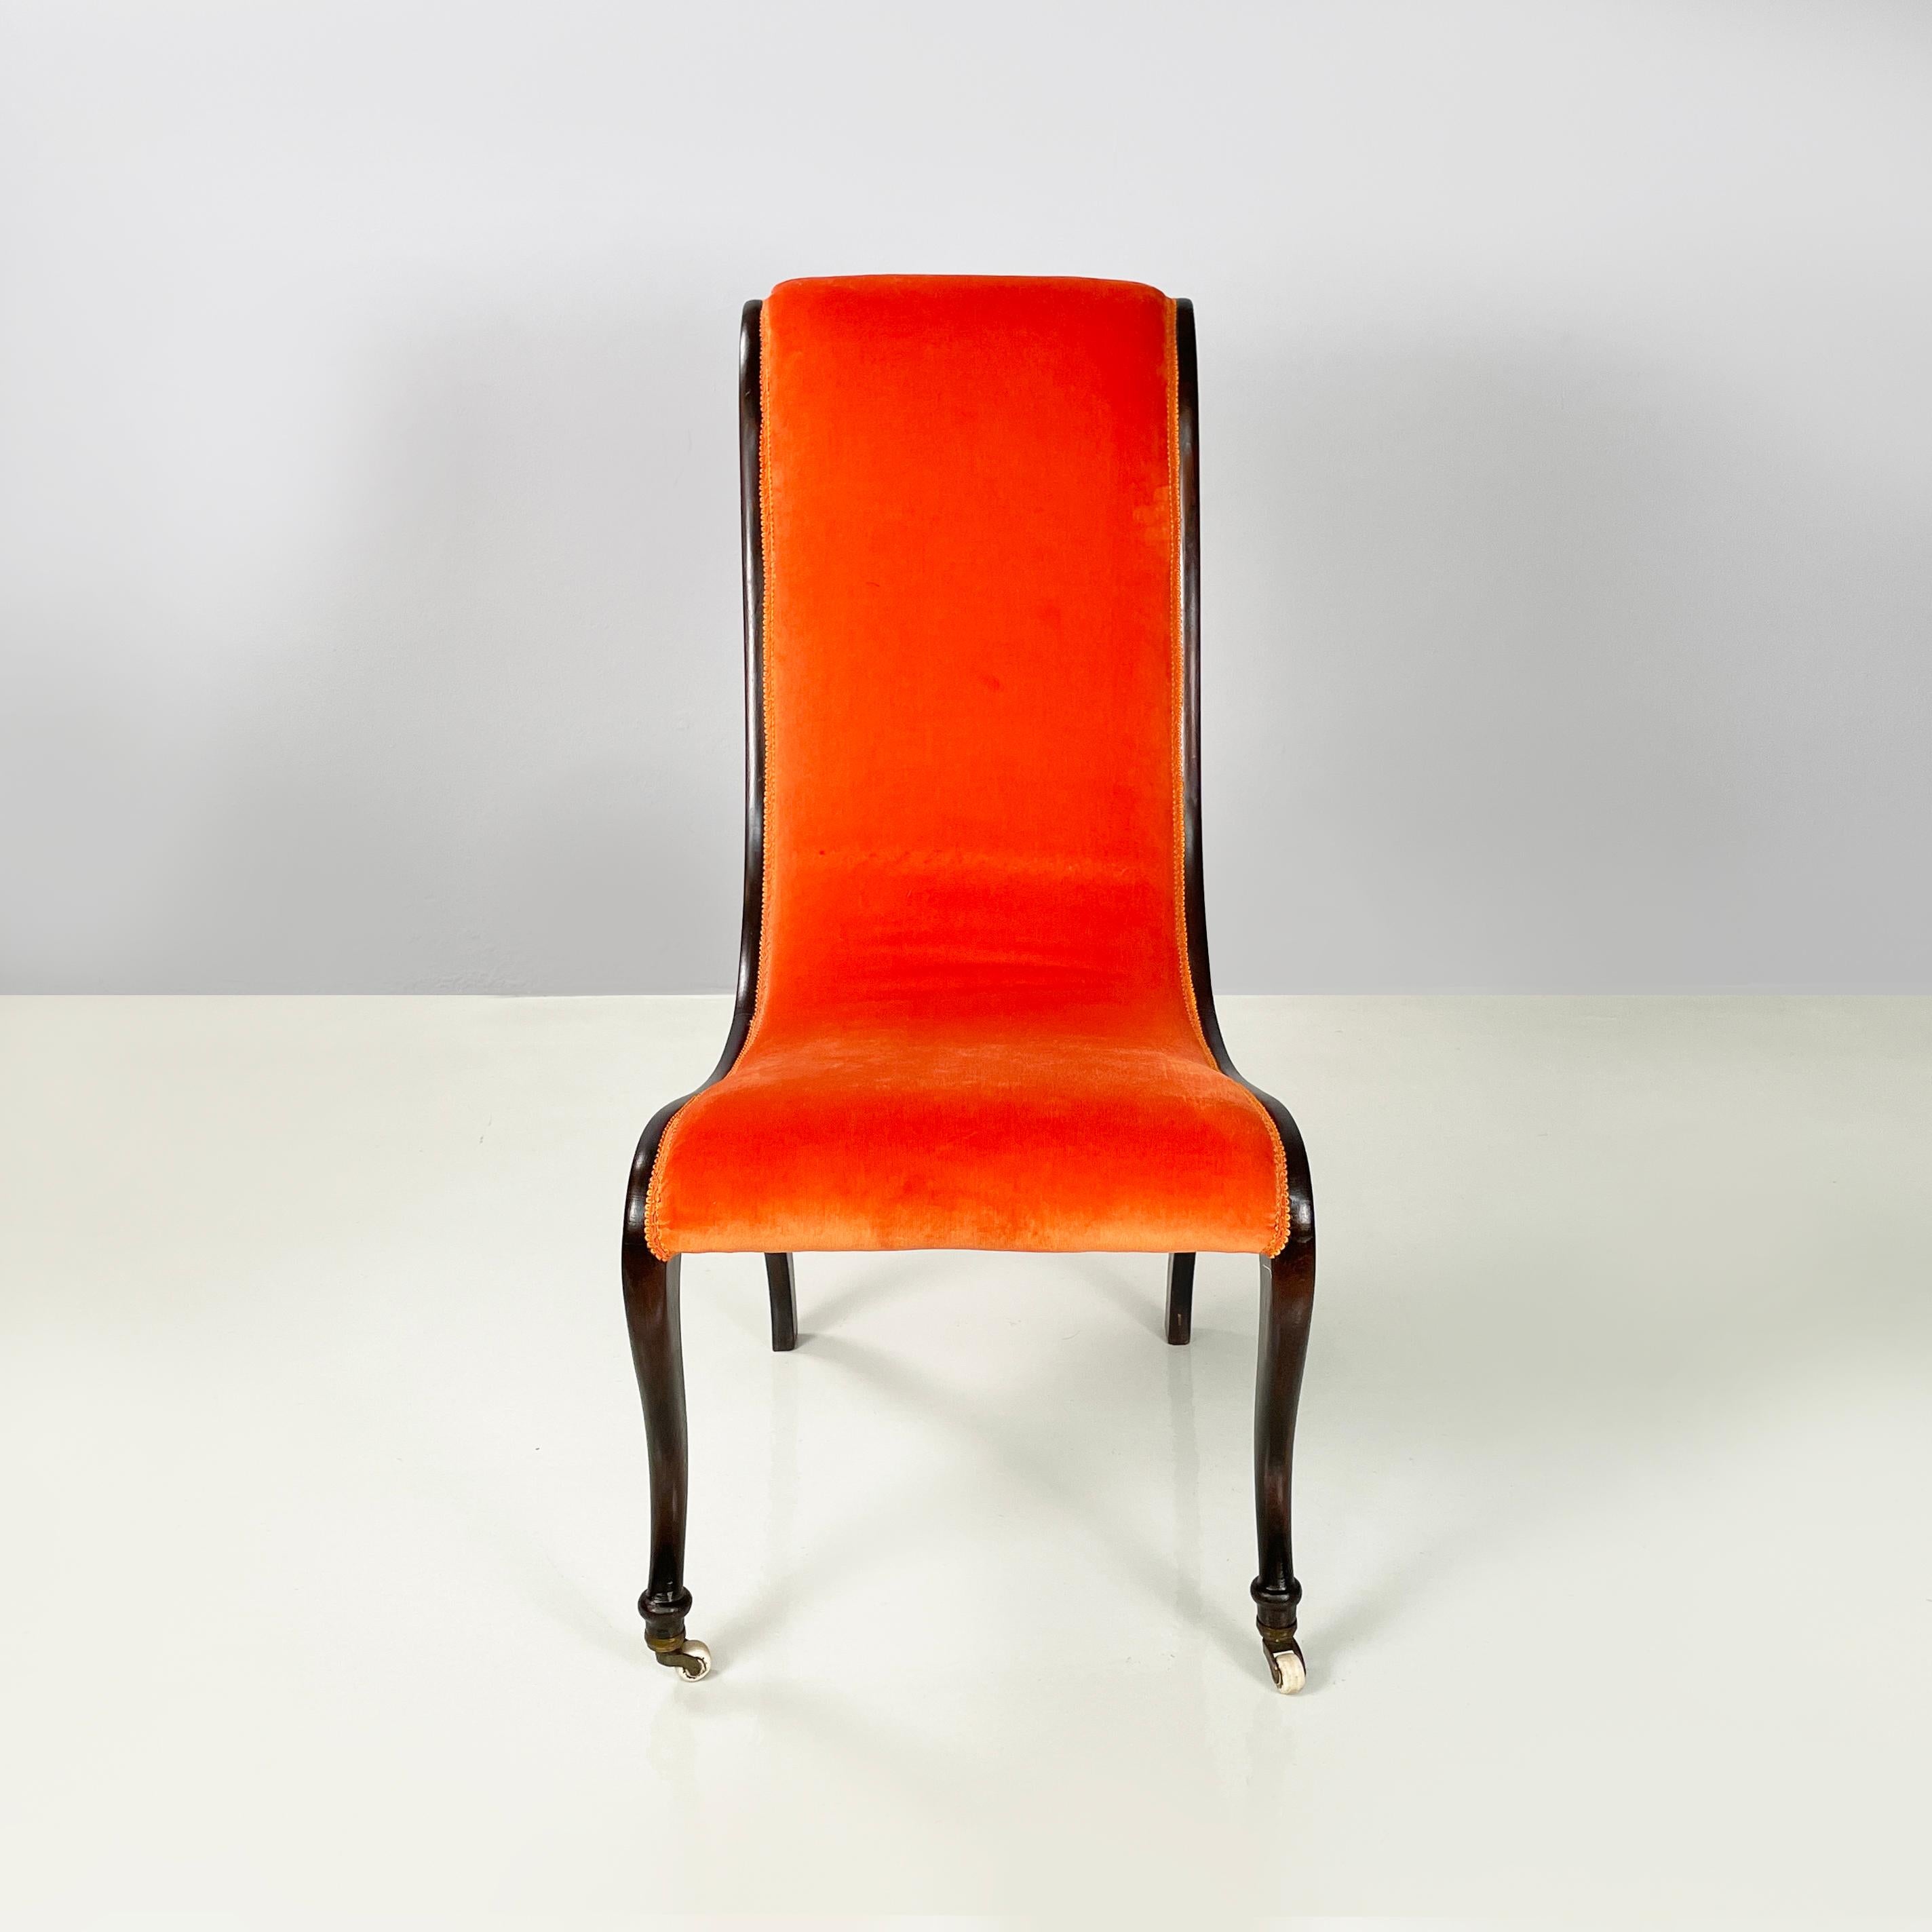 Chaise danoise moderne du milieu du siècle en velours orange et bois foncé, années 1950
Chaise avec dossier et assise incurvés, rembourrés et recouverts de tissu velours orange vif. Les bords sont terminés par des garnitures orange. La structure qui